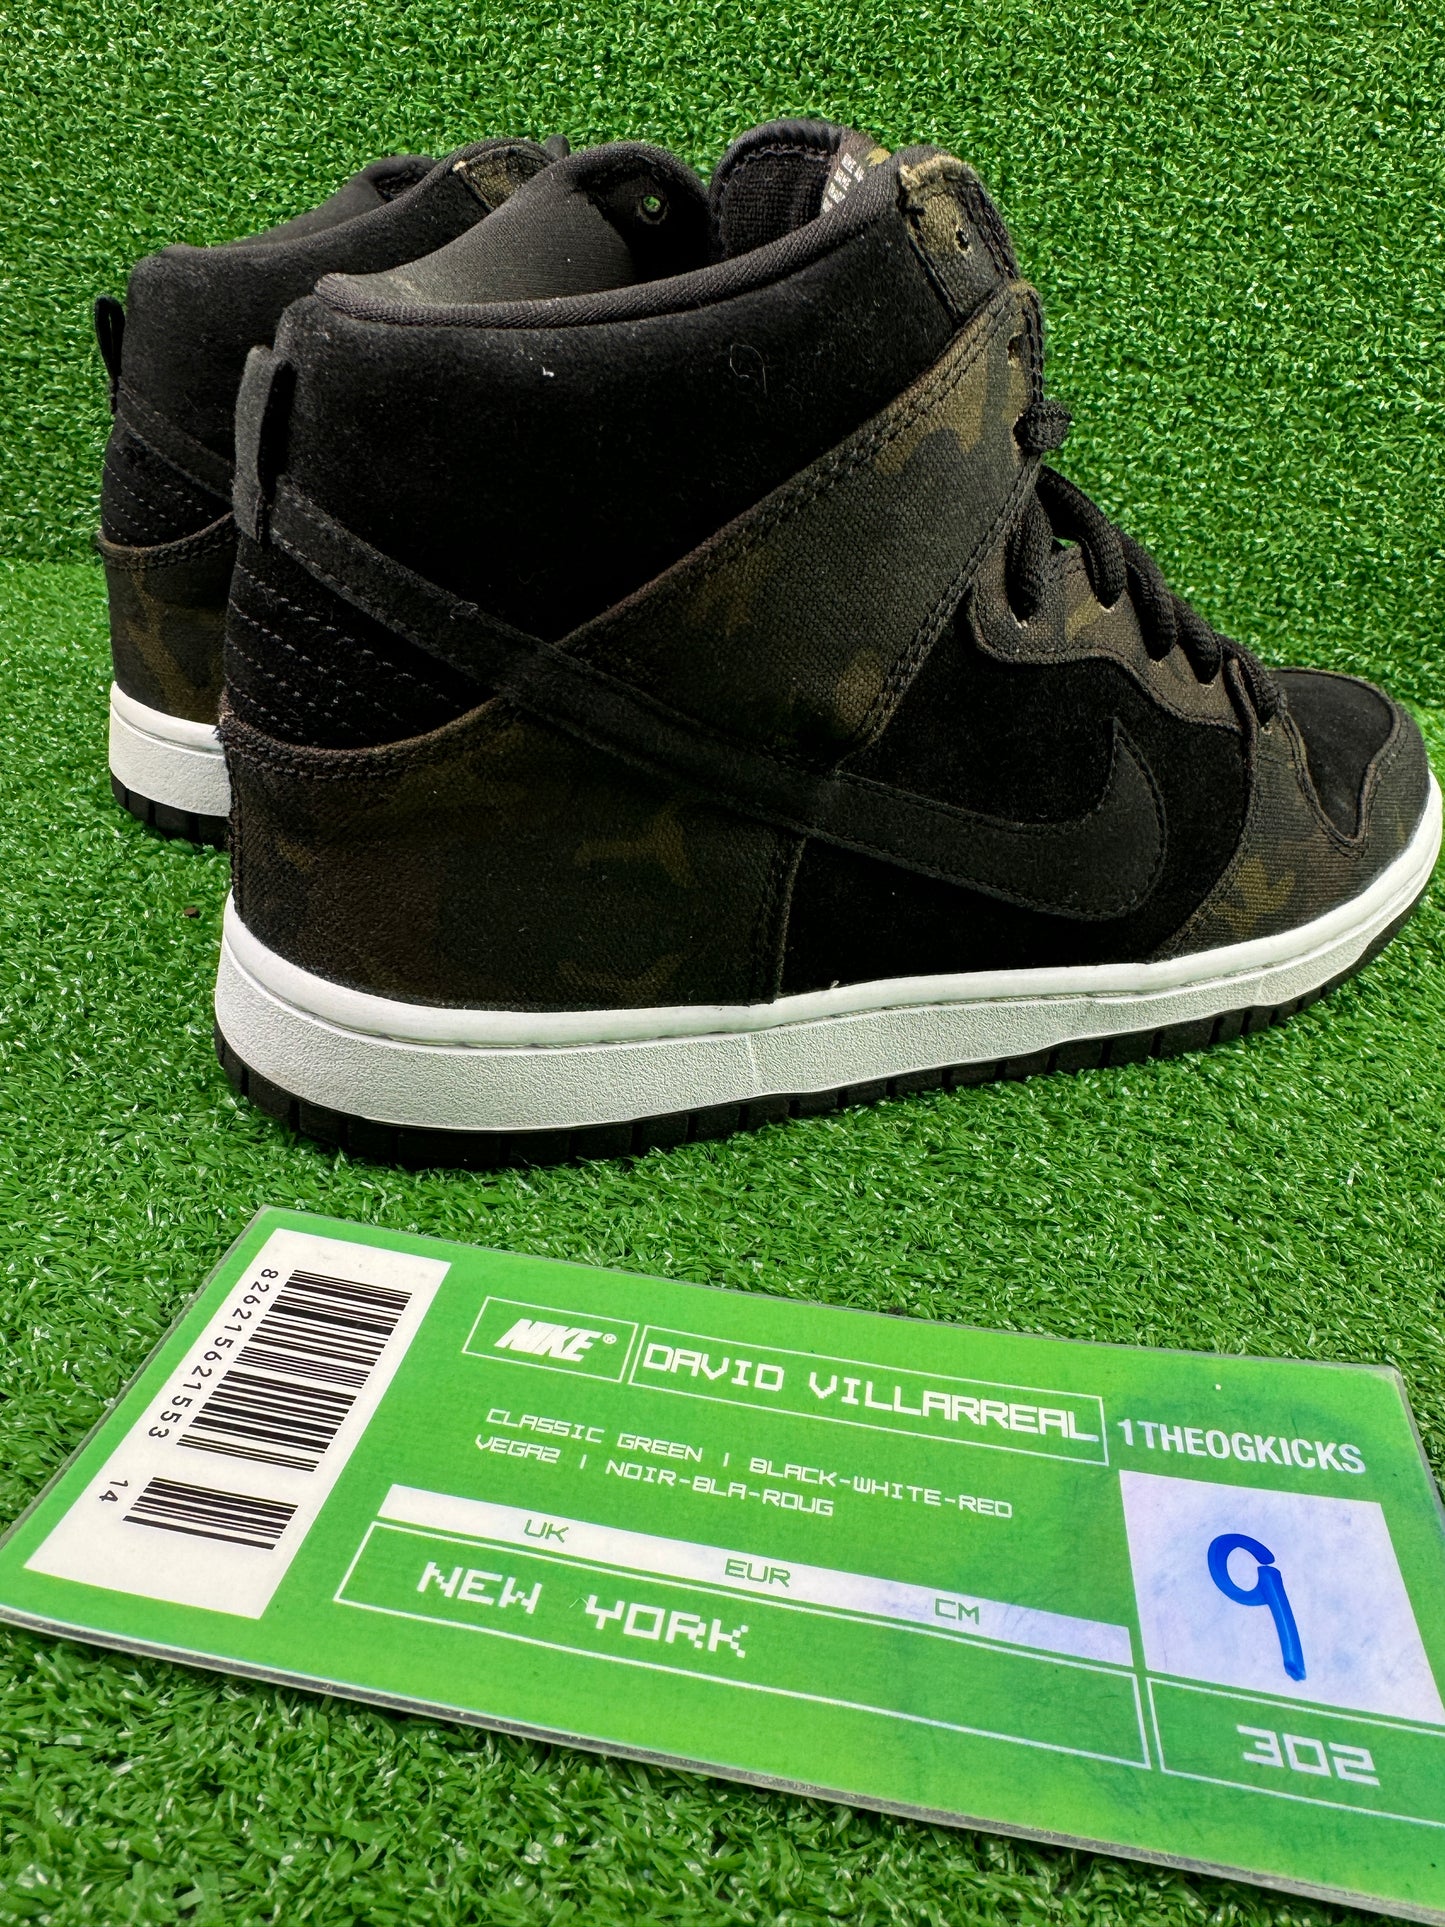 Nike Sb Iguana Camo Highs - Size 9